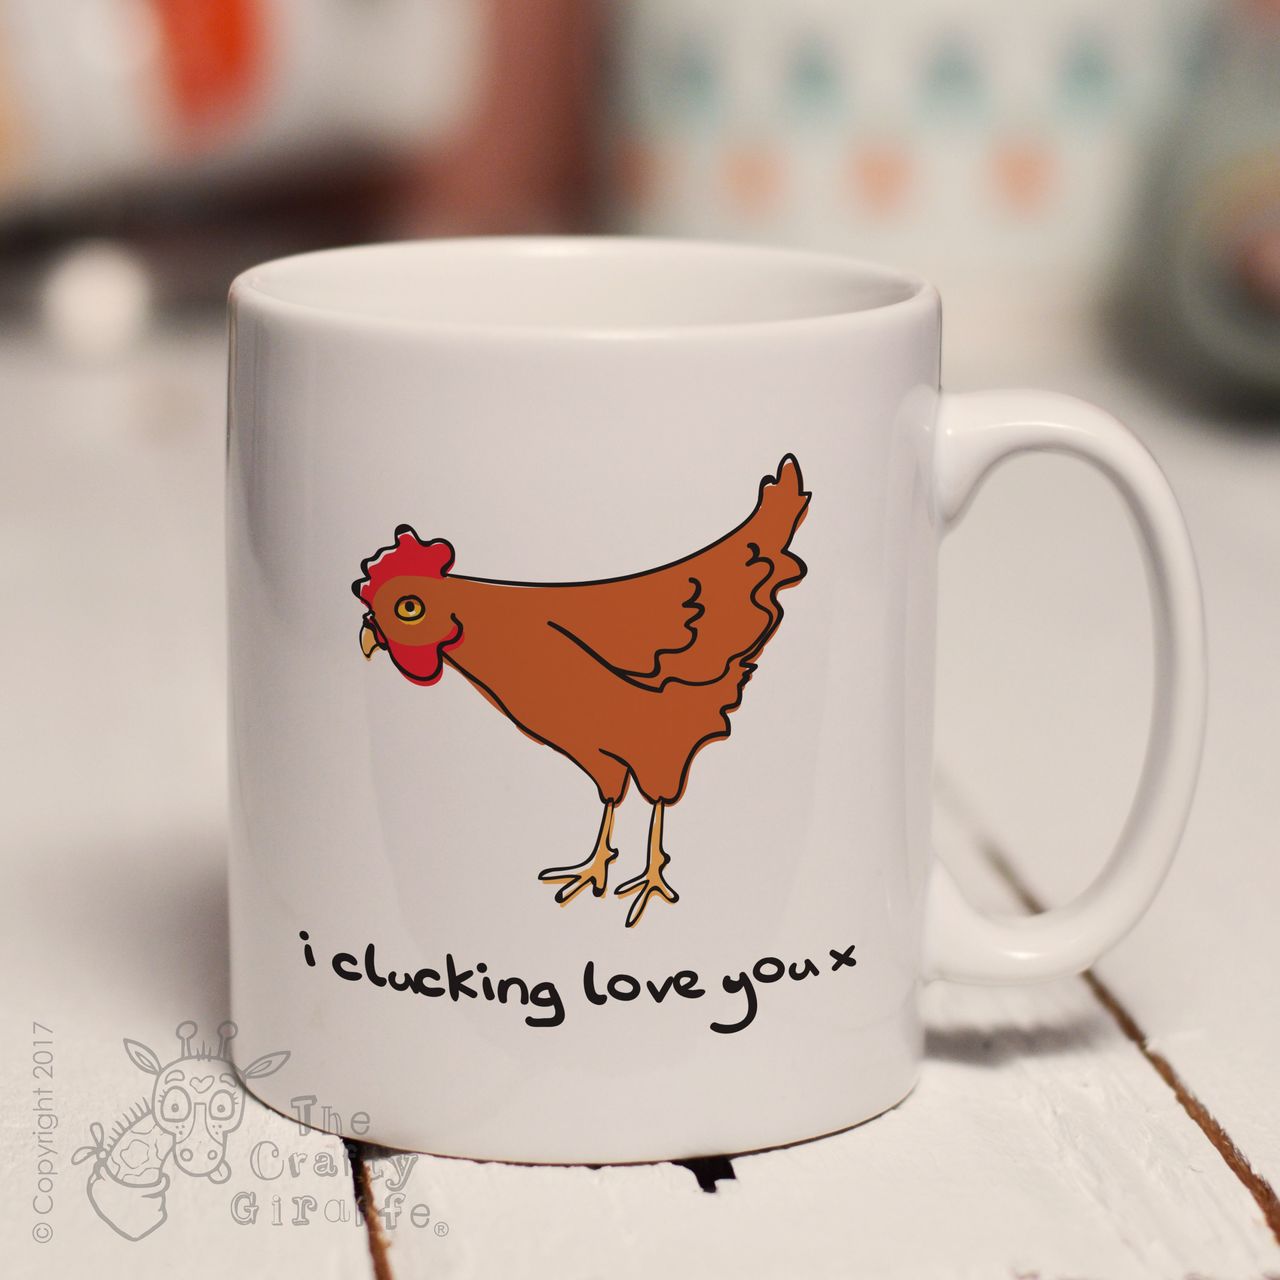 I clucking love you mug